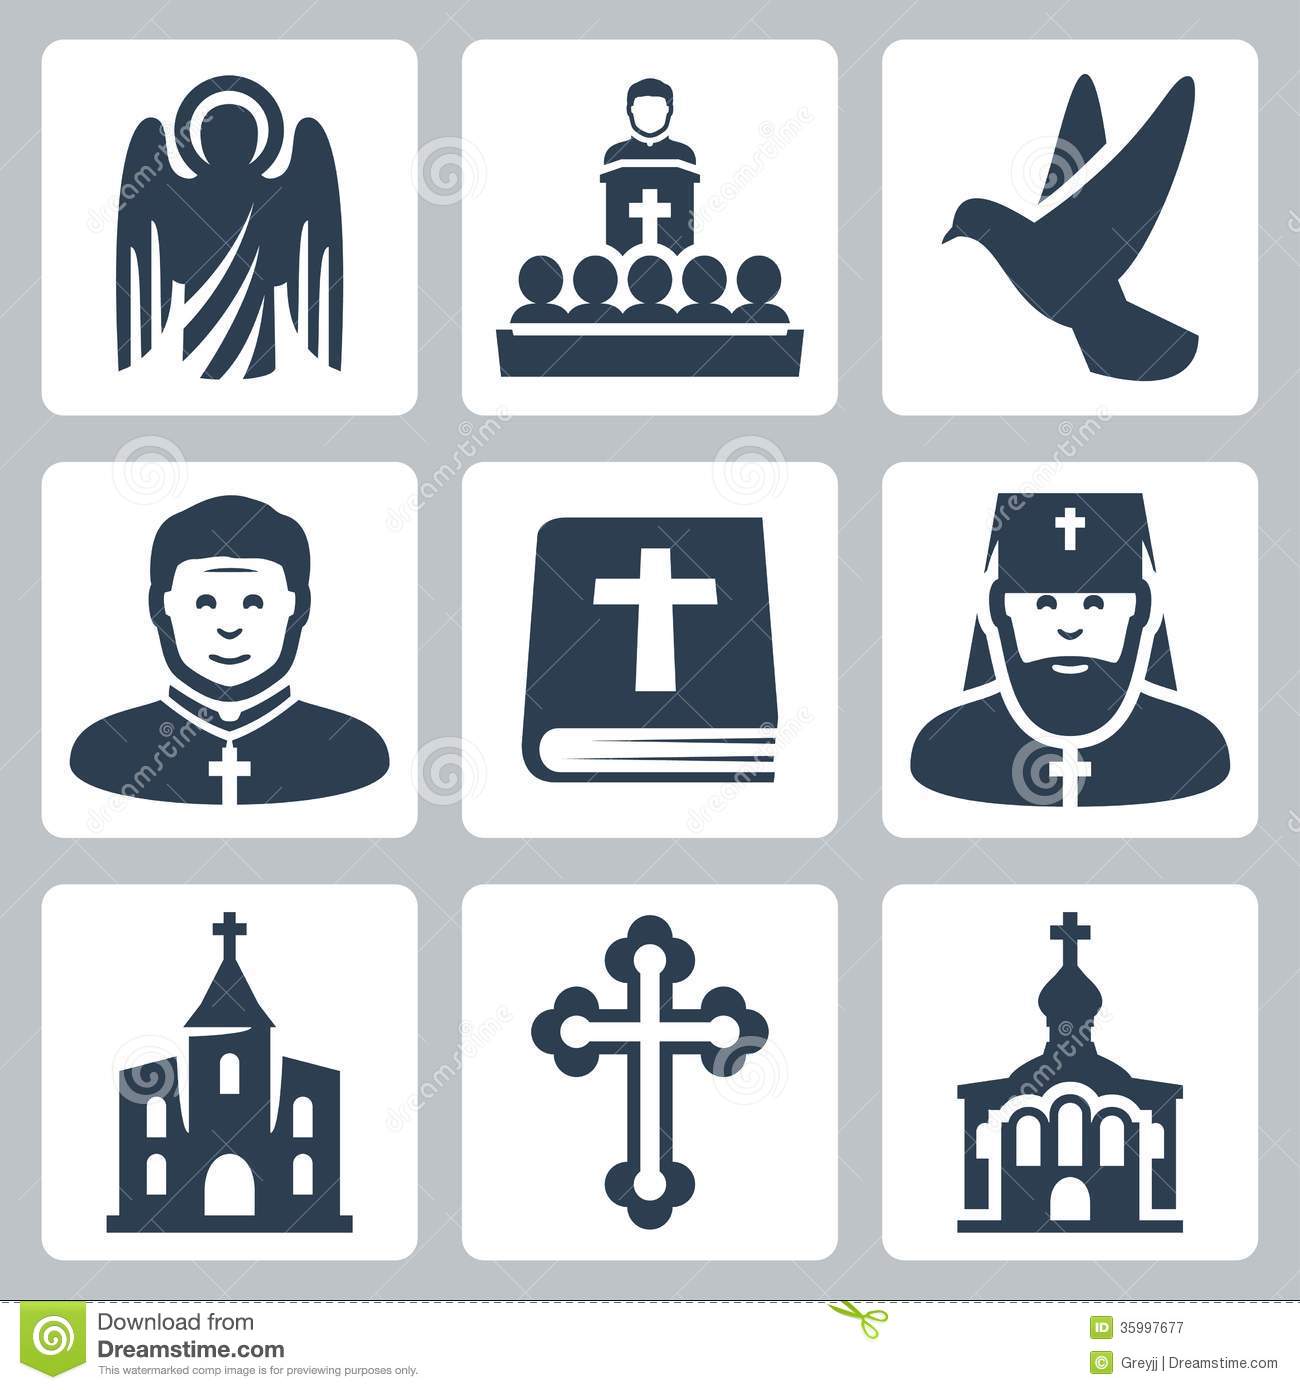 Free Religious Christian Icons